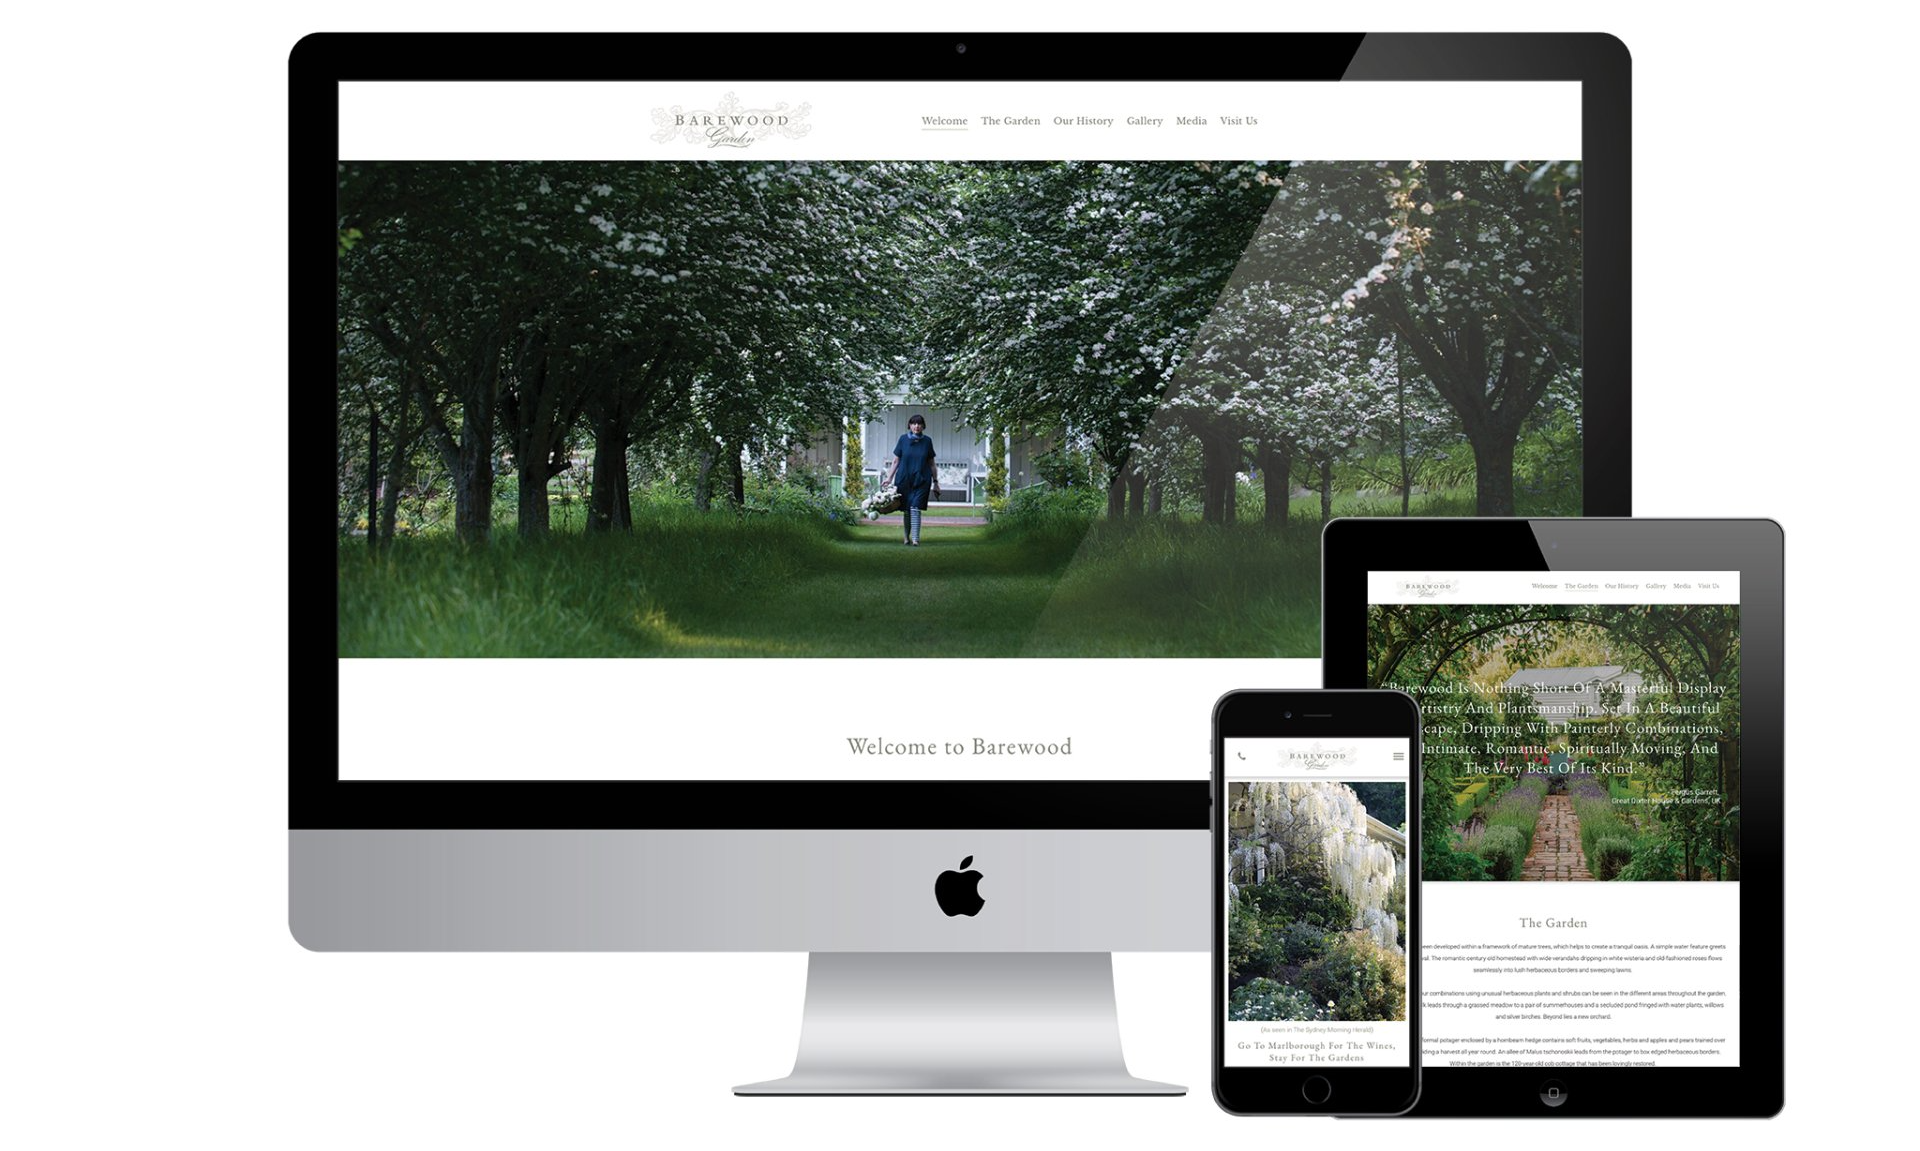 Barewood Garden website designed by Vanilla Hayes creative graphic design  studio in Blenheim, Marlborough, New Zealand